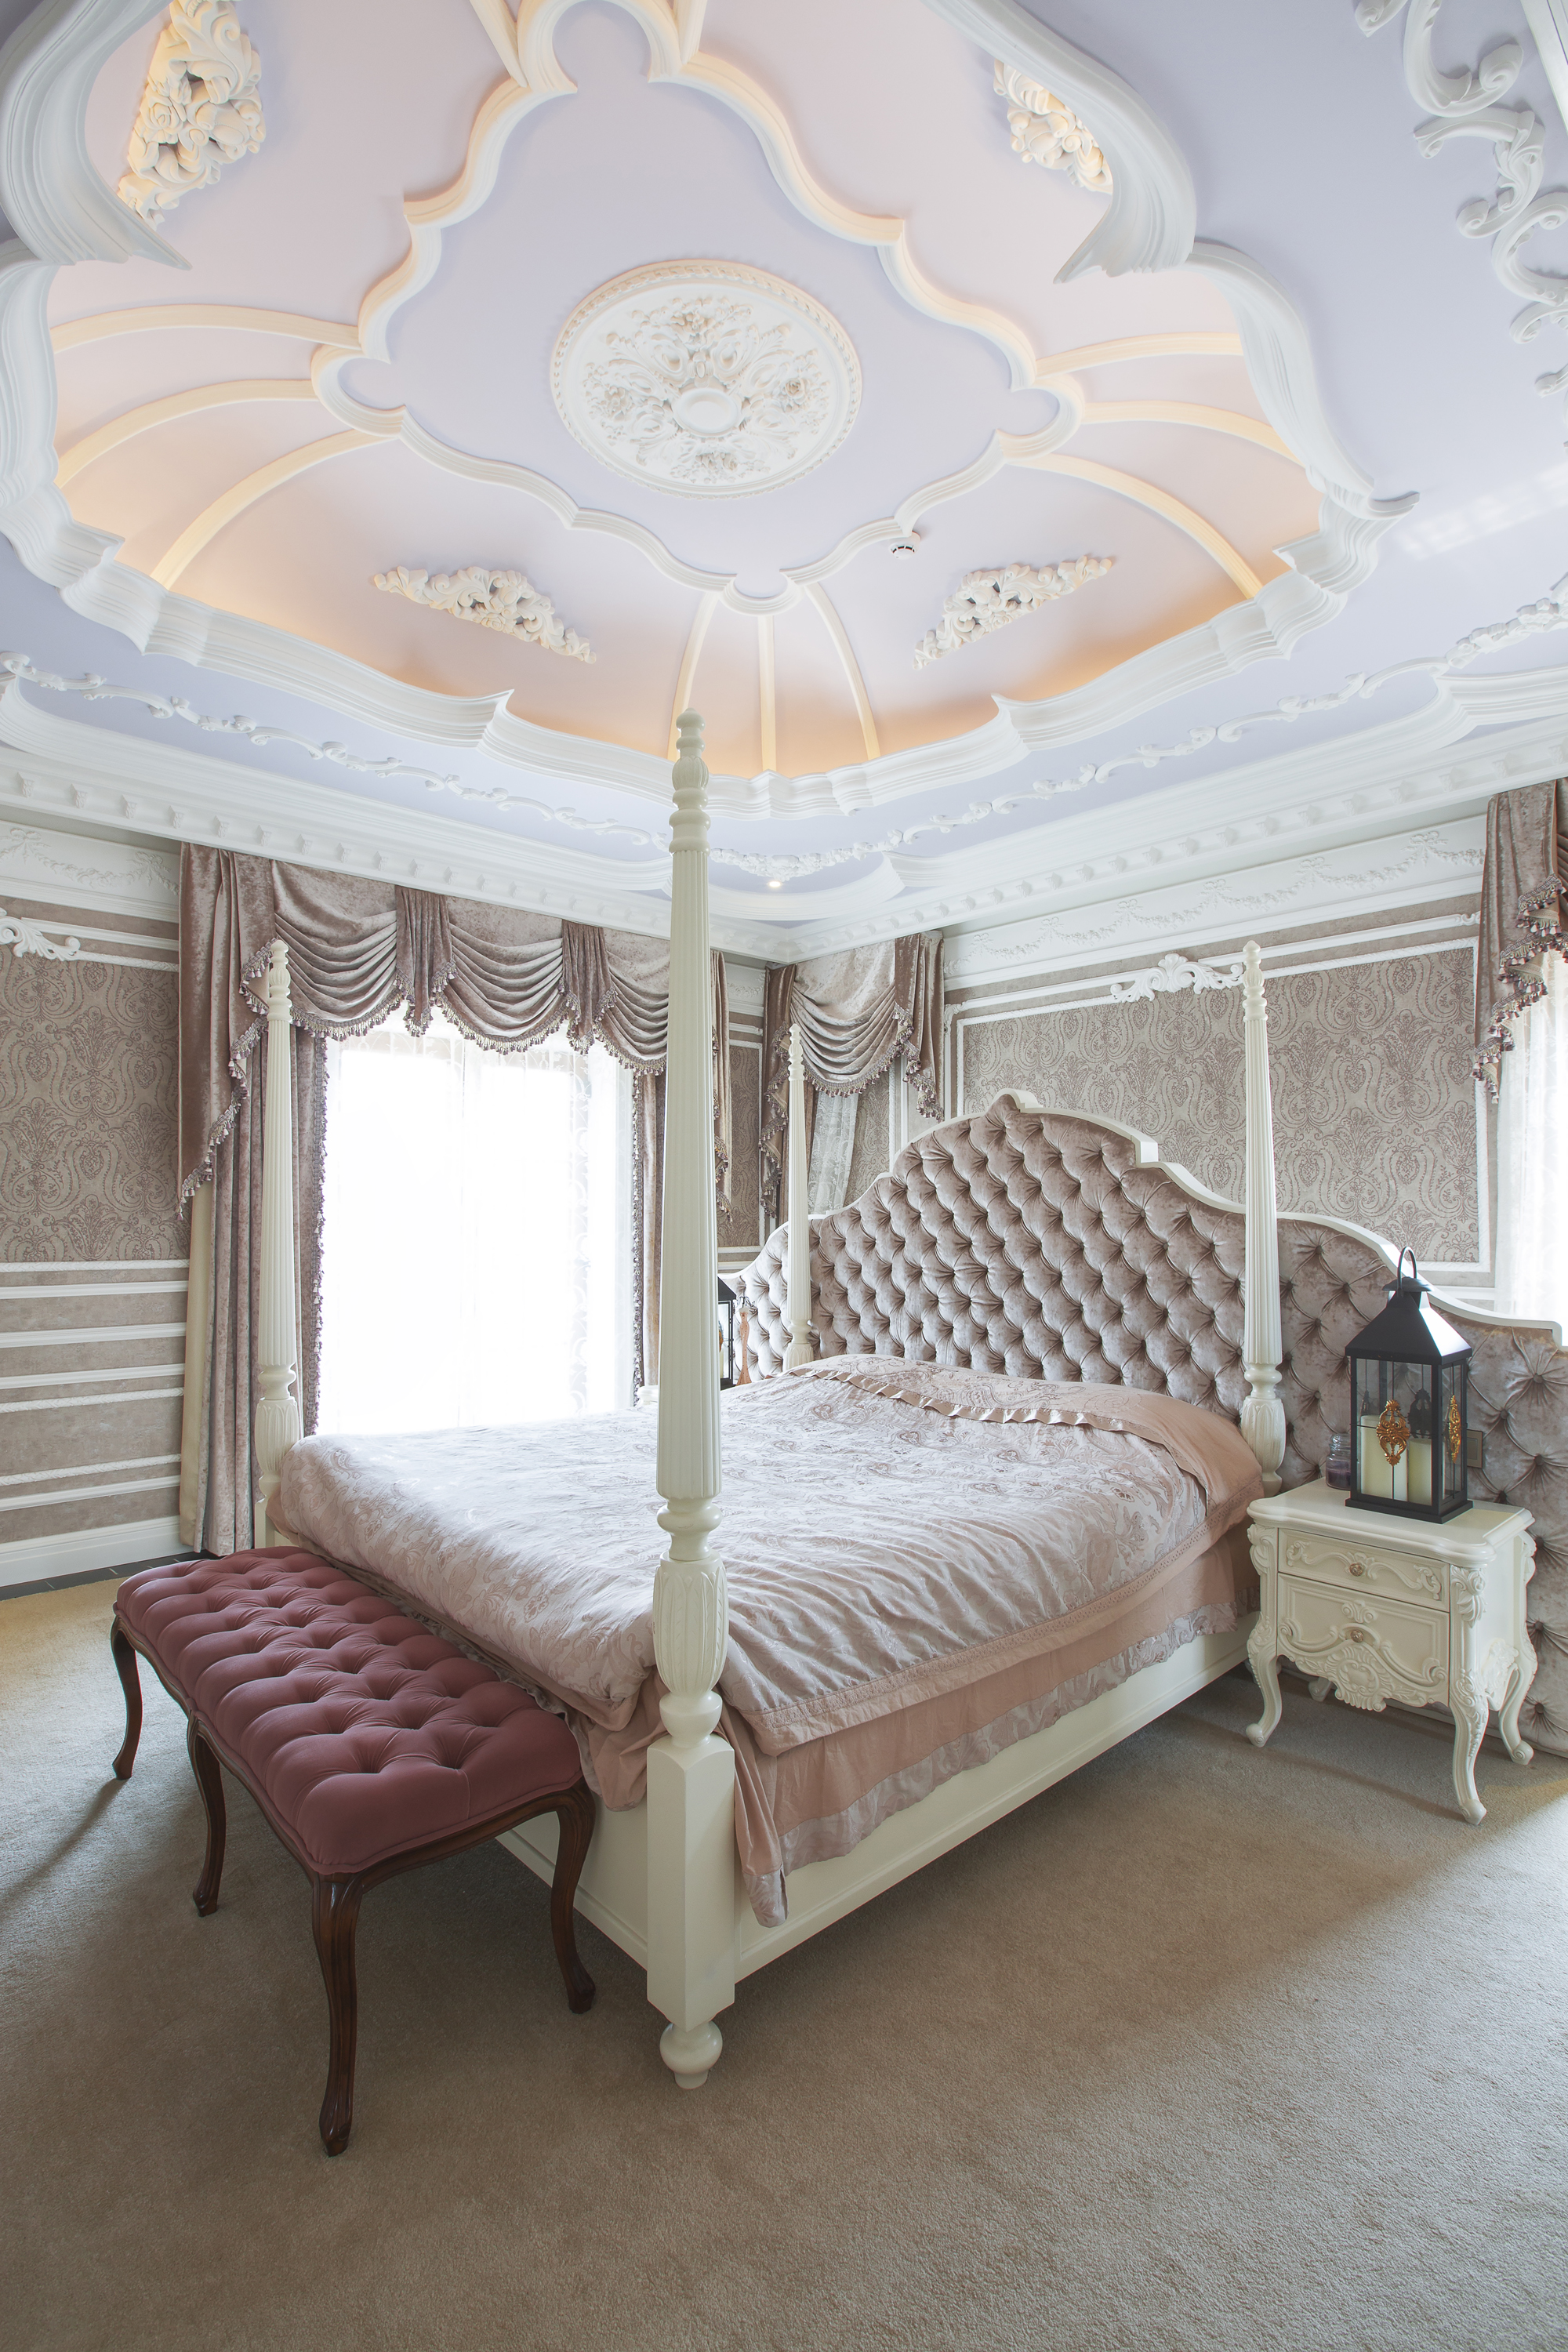 简约 欧式 原创国际 墅装 全案设计 卧室图片来自原创国际别墅装饰在东方太阳城的分享